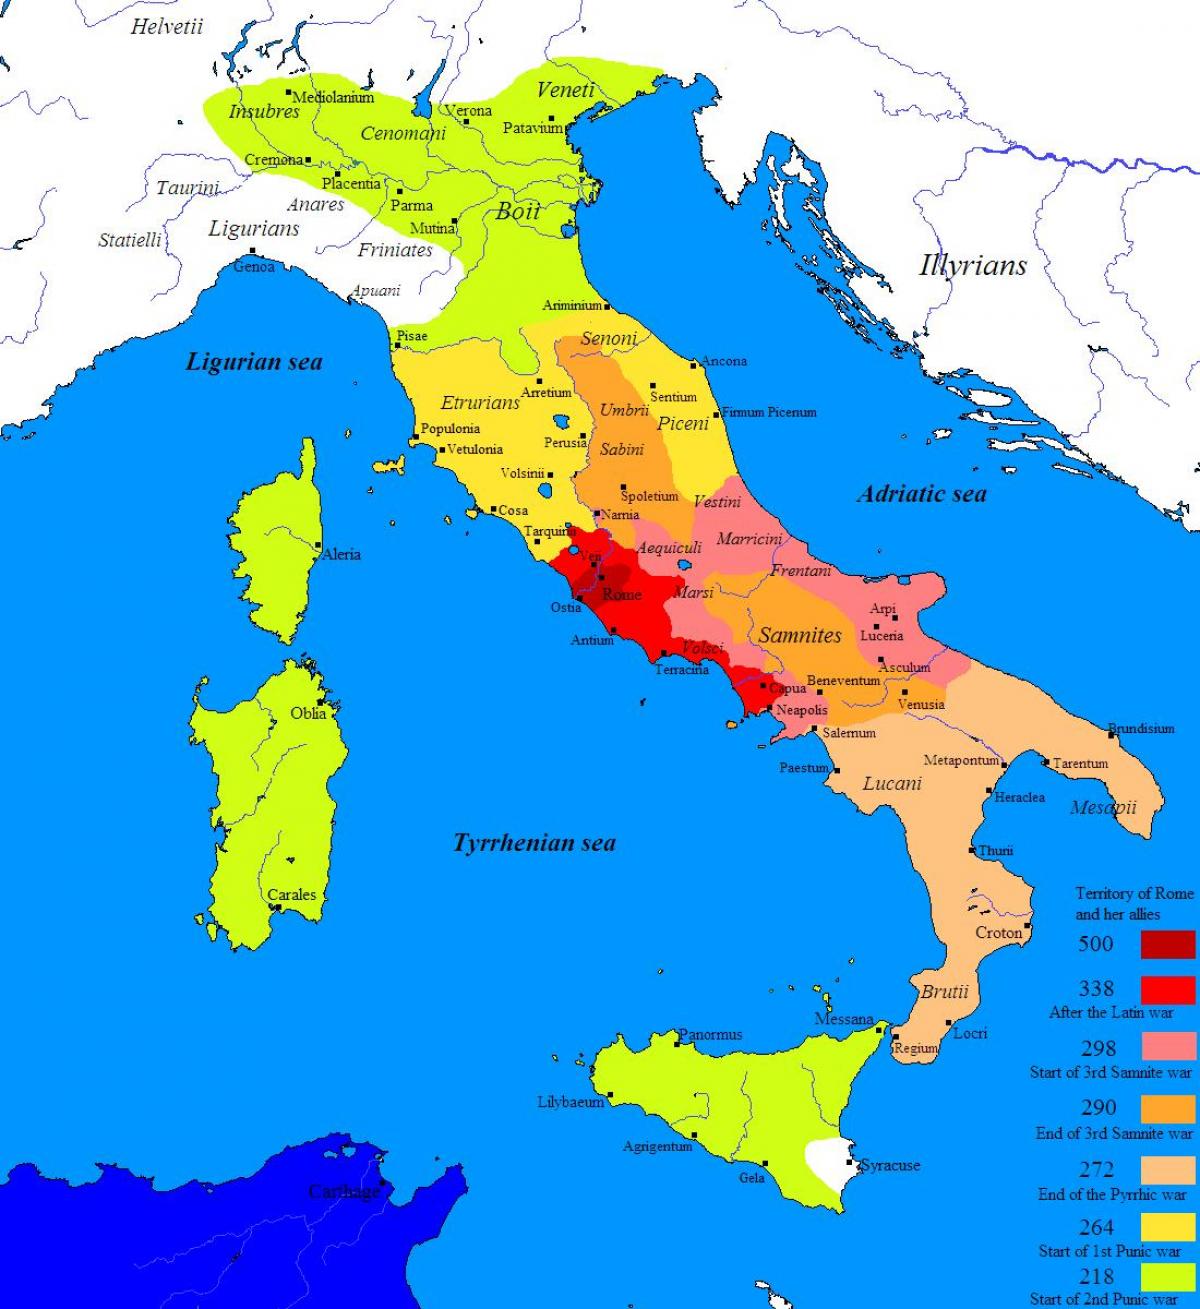 Mappa di Roma antica e dintorni